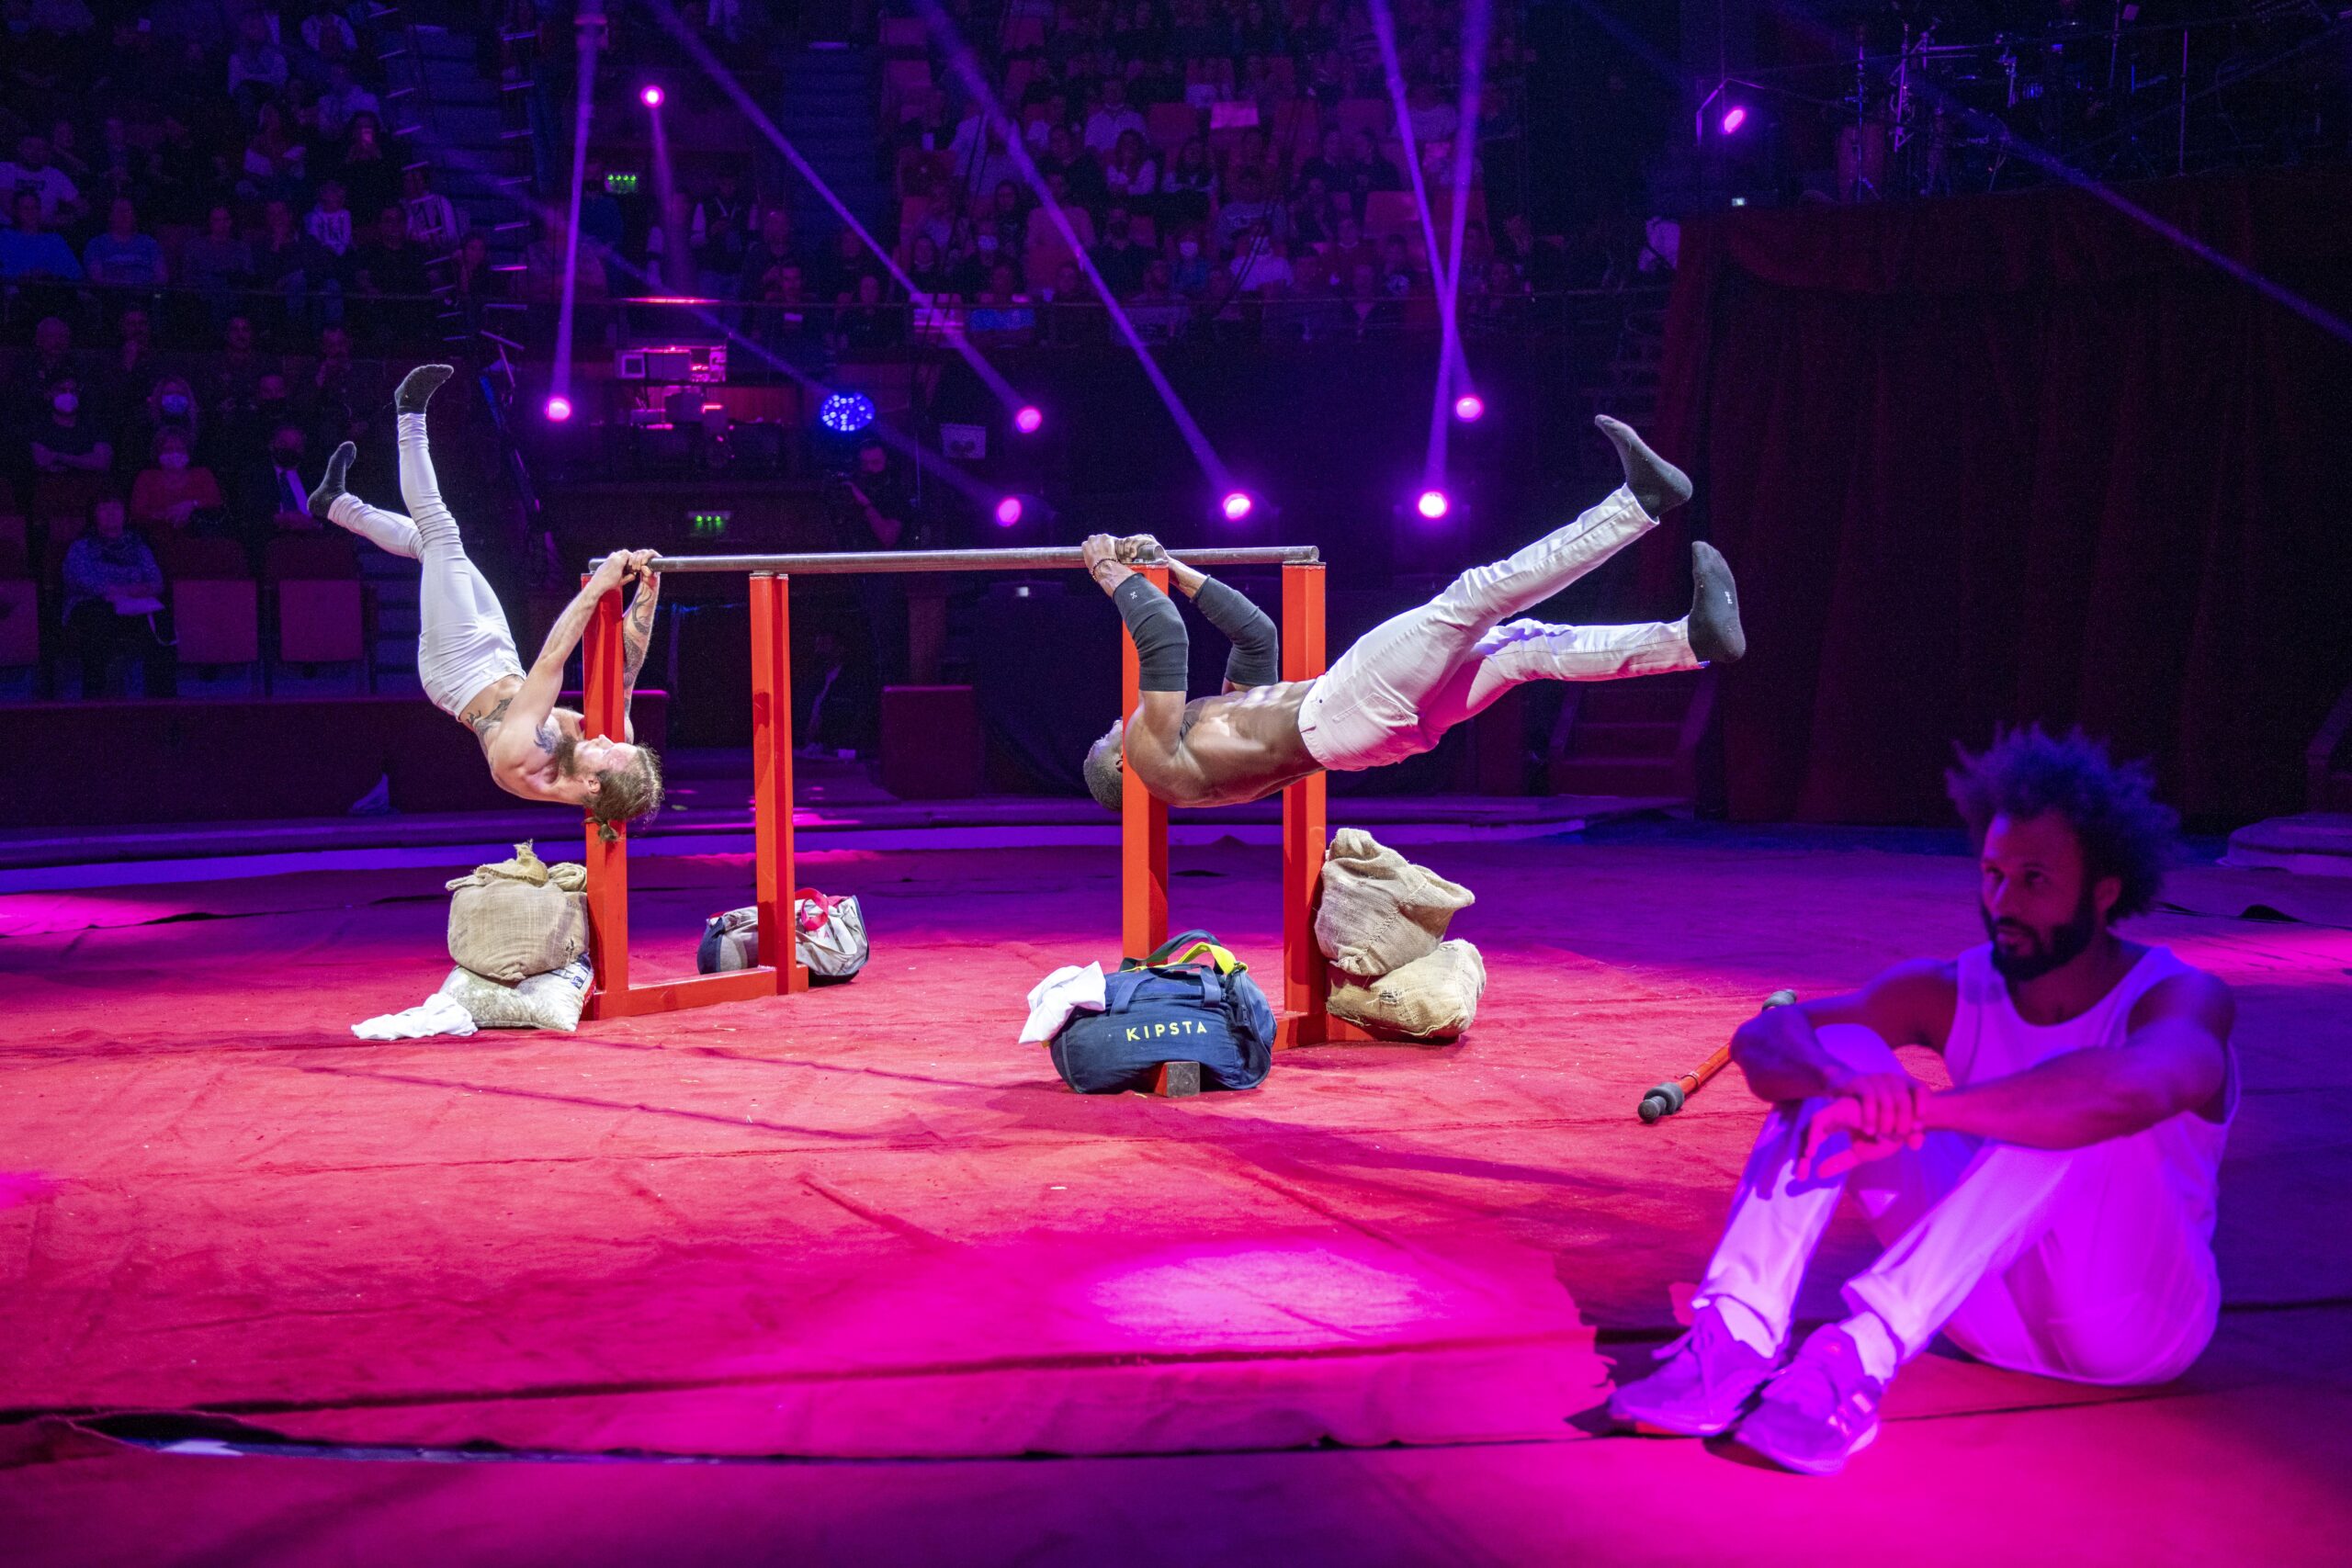 Franciaországban a Bartigerzz Group az első street workout csapat, akik olyan komplex produkciót hoztak létre, amit cirkuszokban, színházakban és tehetségkutató showműsorokban is be lehet mutatni. 